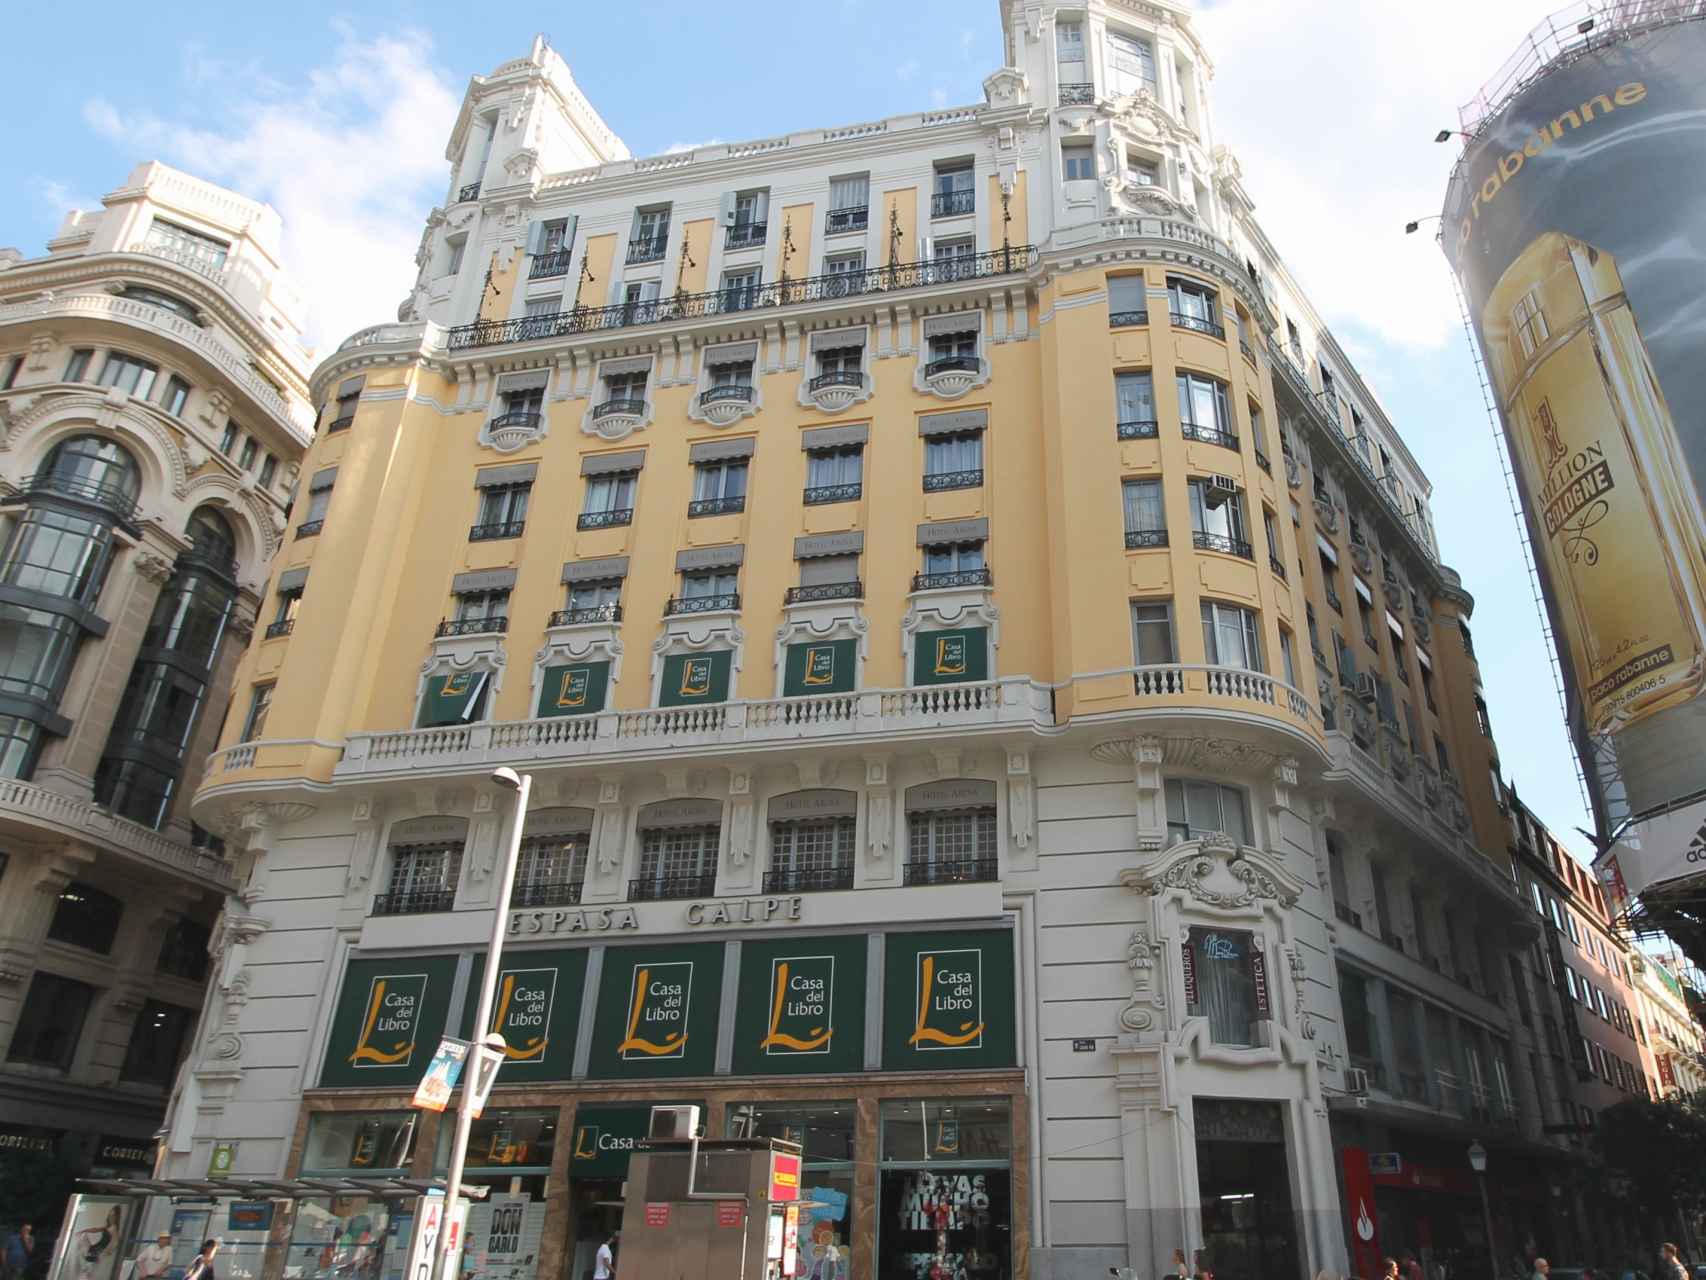 Edificio comprado por Cristiano Ronaldo, en asociación con Pestana.